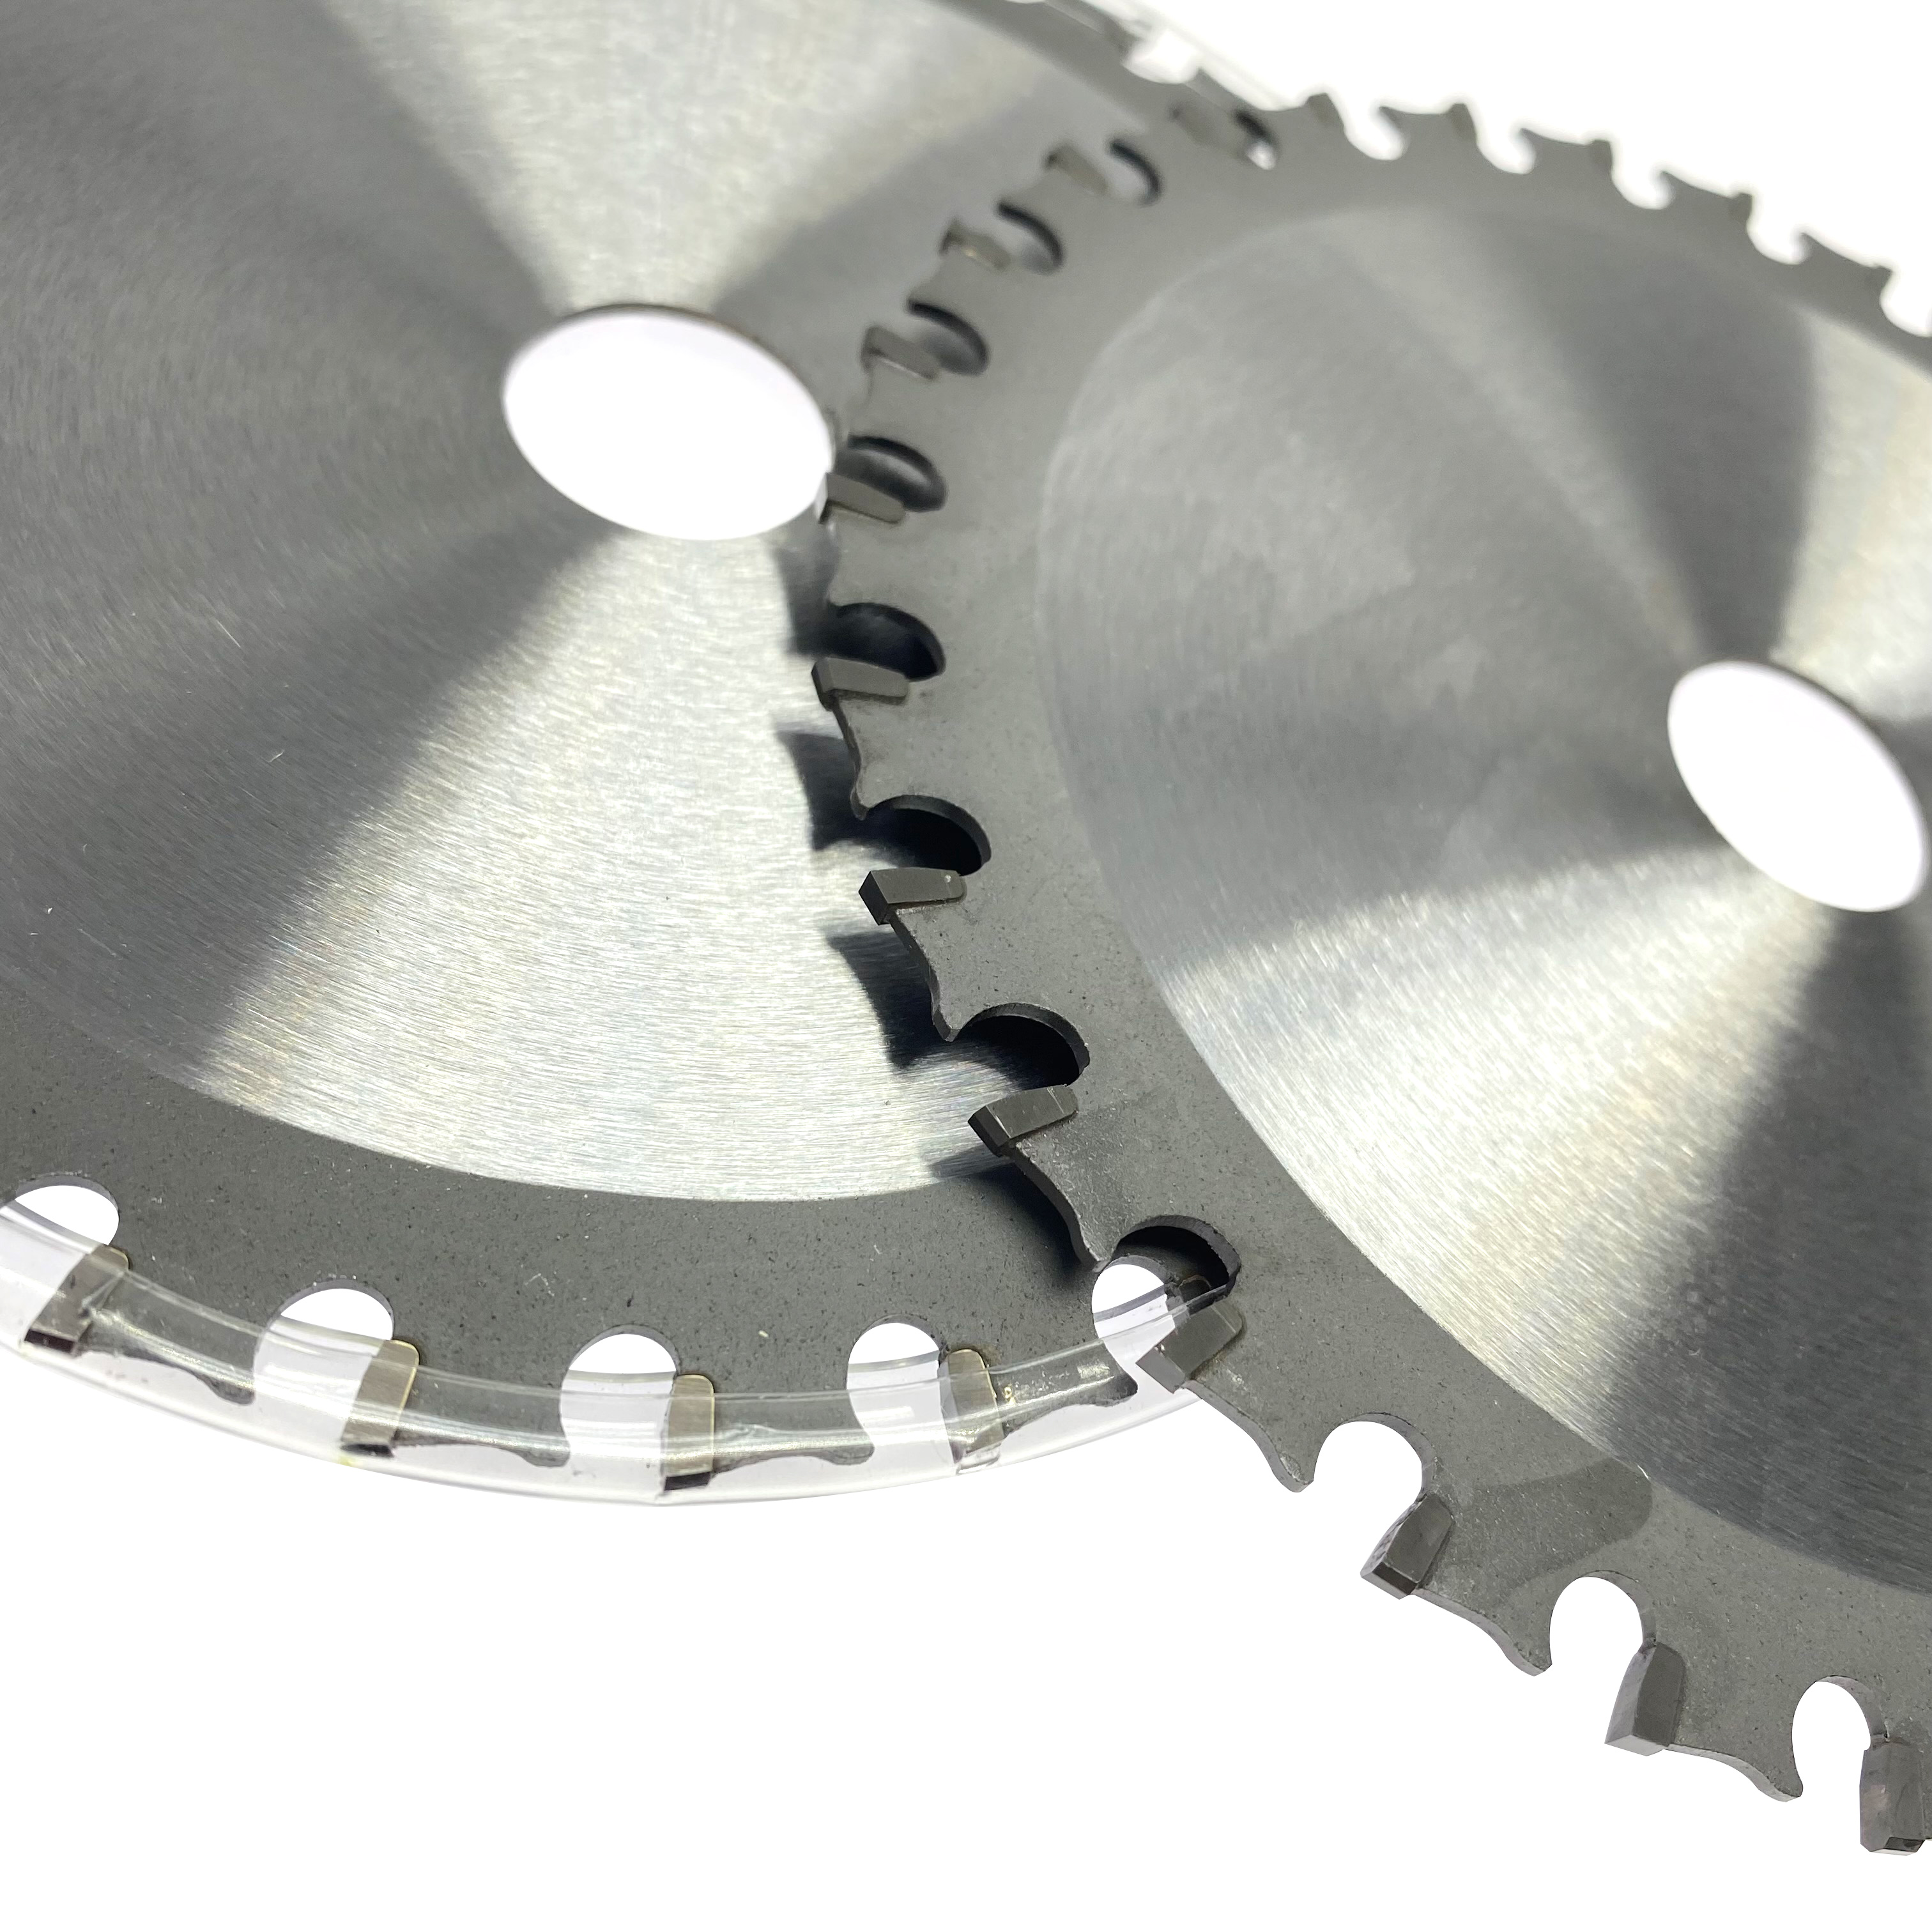 Hoja de sierra circular tct de herramientas Koera de 5 pulgadas, 135x30T x 20mm para cortar aluminio